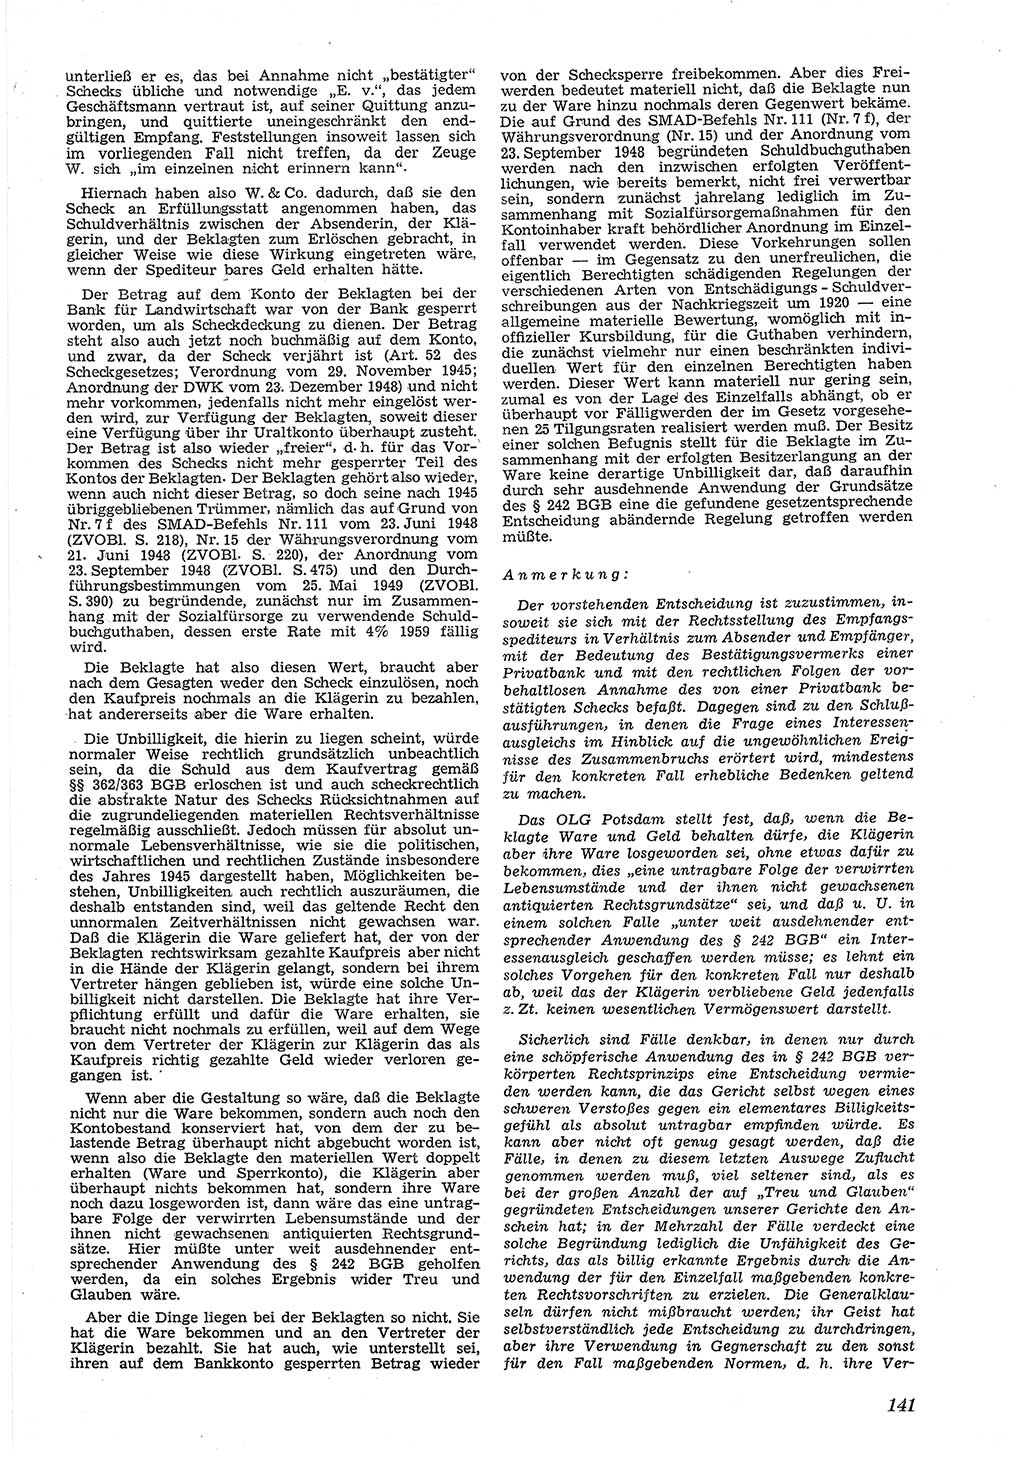 Neue Justiz (NJ), Zeitschrift für Recht und Rechtswissenschaft [Deutsche Demokratische Republik (DDR)], 5. Jahrgang 1951, Seite 141 (NJ DDR 1951, S. 141)